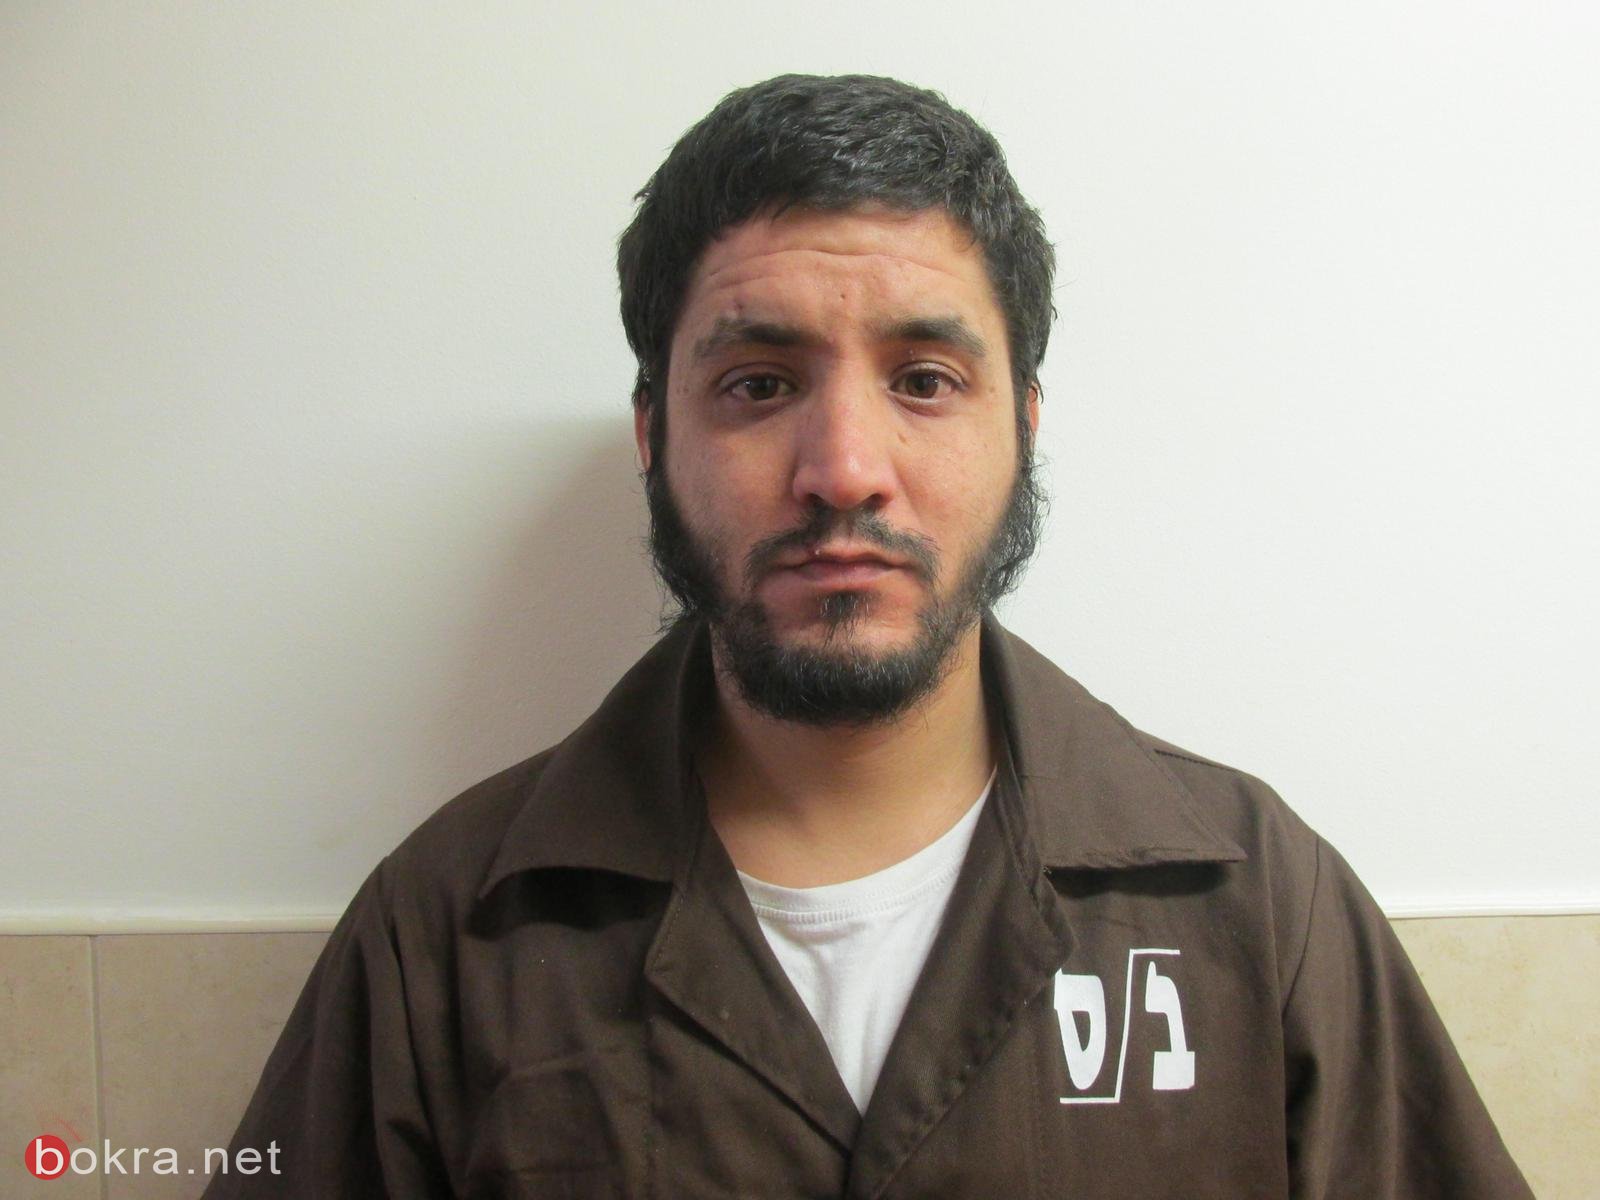 بتهمة تأييد "داعش" تقديم لائحة اتهام ضد  امين ياسين وعلي عرموش من طمرة-14